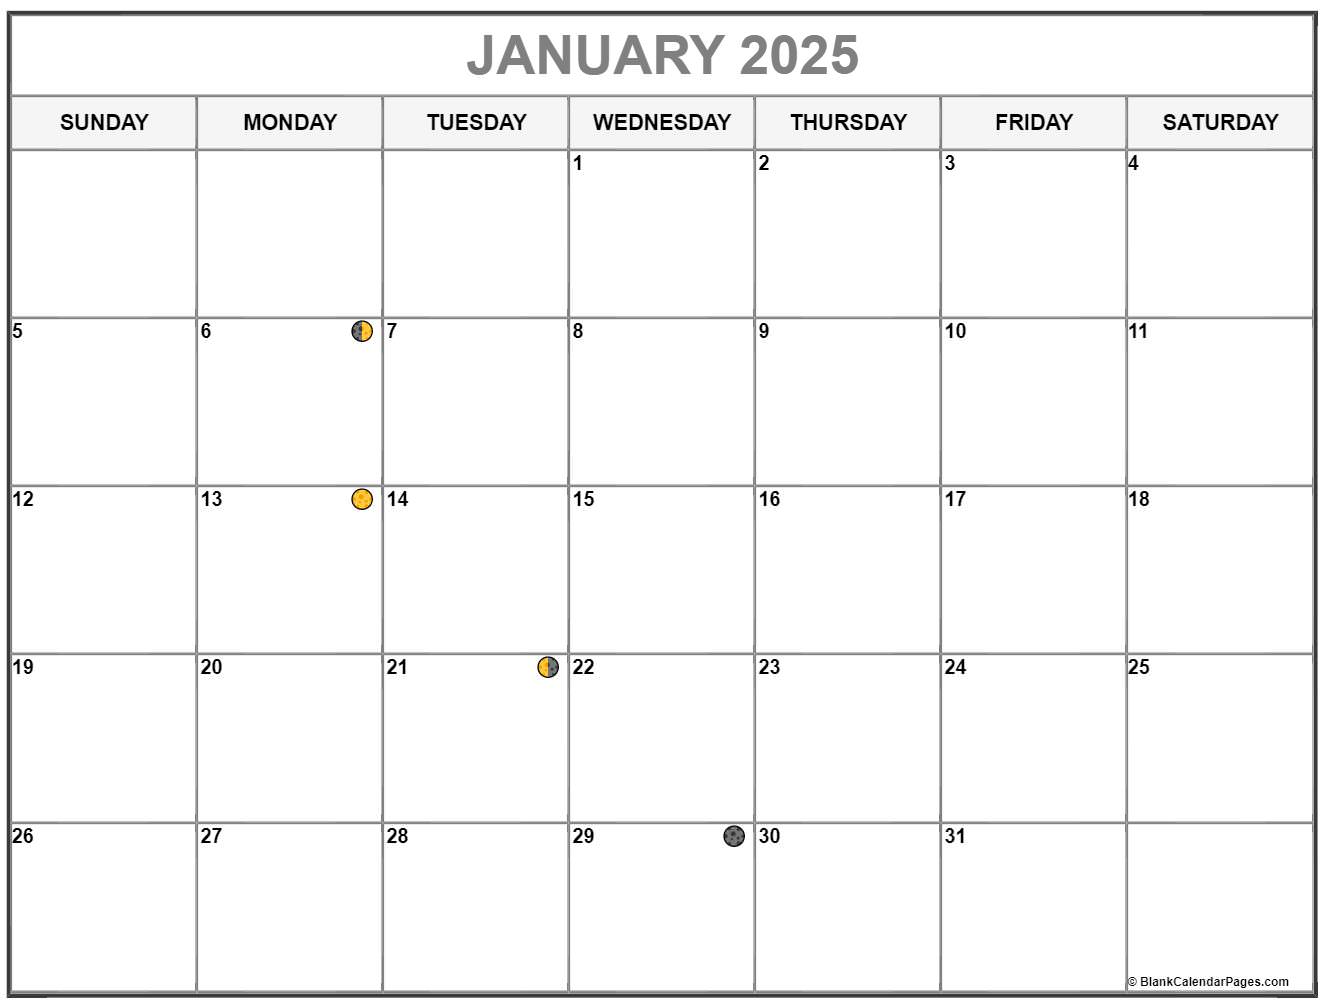 2021-2025-lunar-calendar-bundle-plus-a-moon-phase-grimoire-etsy